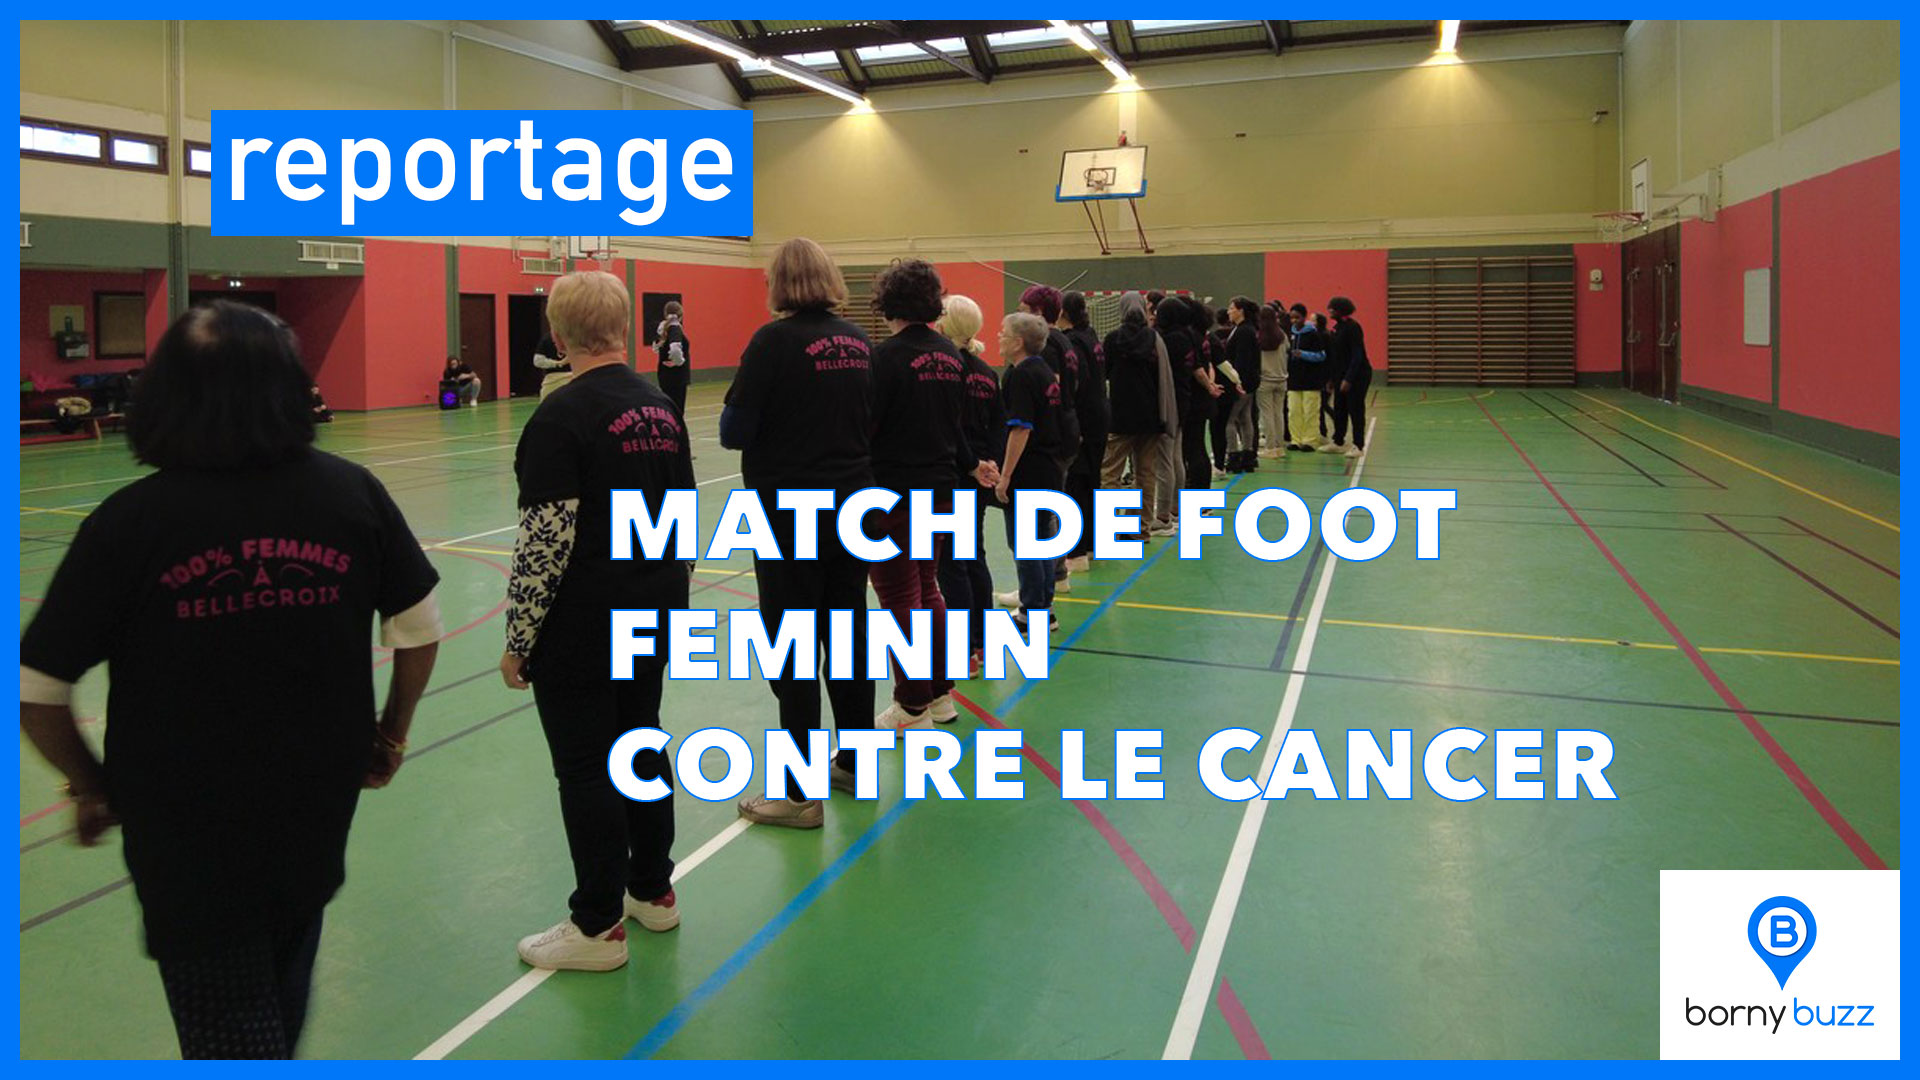 Match de football féminin pour la lutte contre le cancer du sein | Photo BORNYBUZZ / Camille | Graphisme / Aurélien ZANN